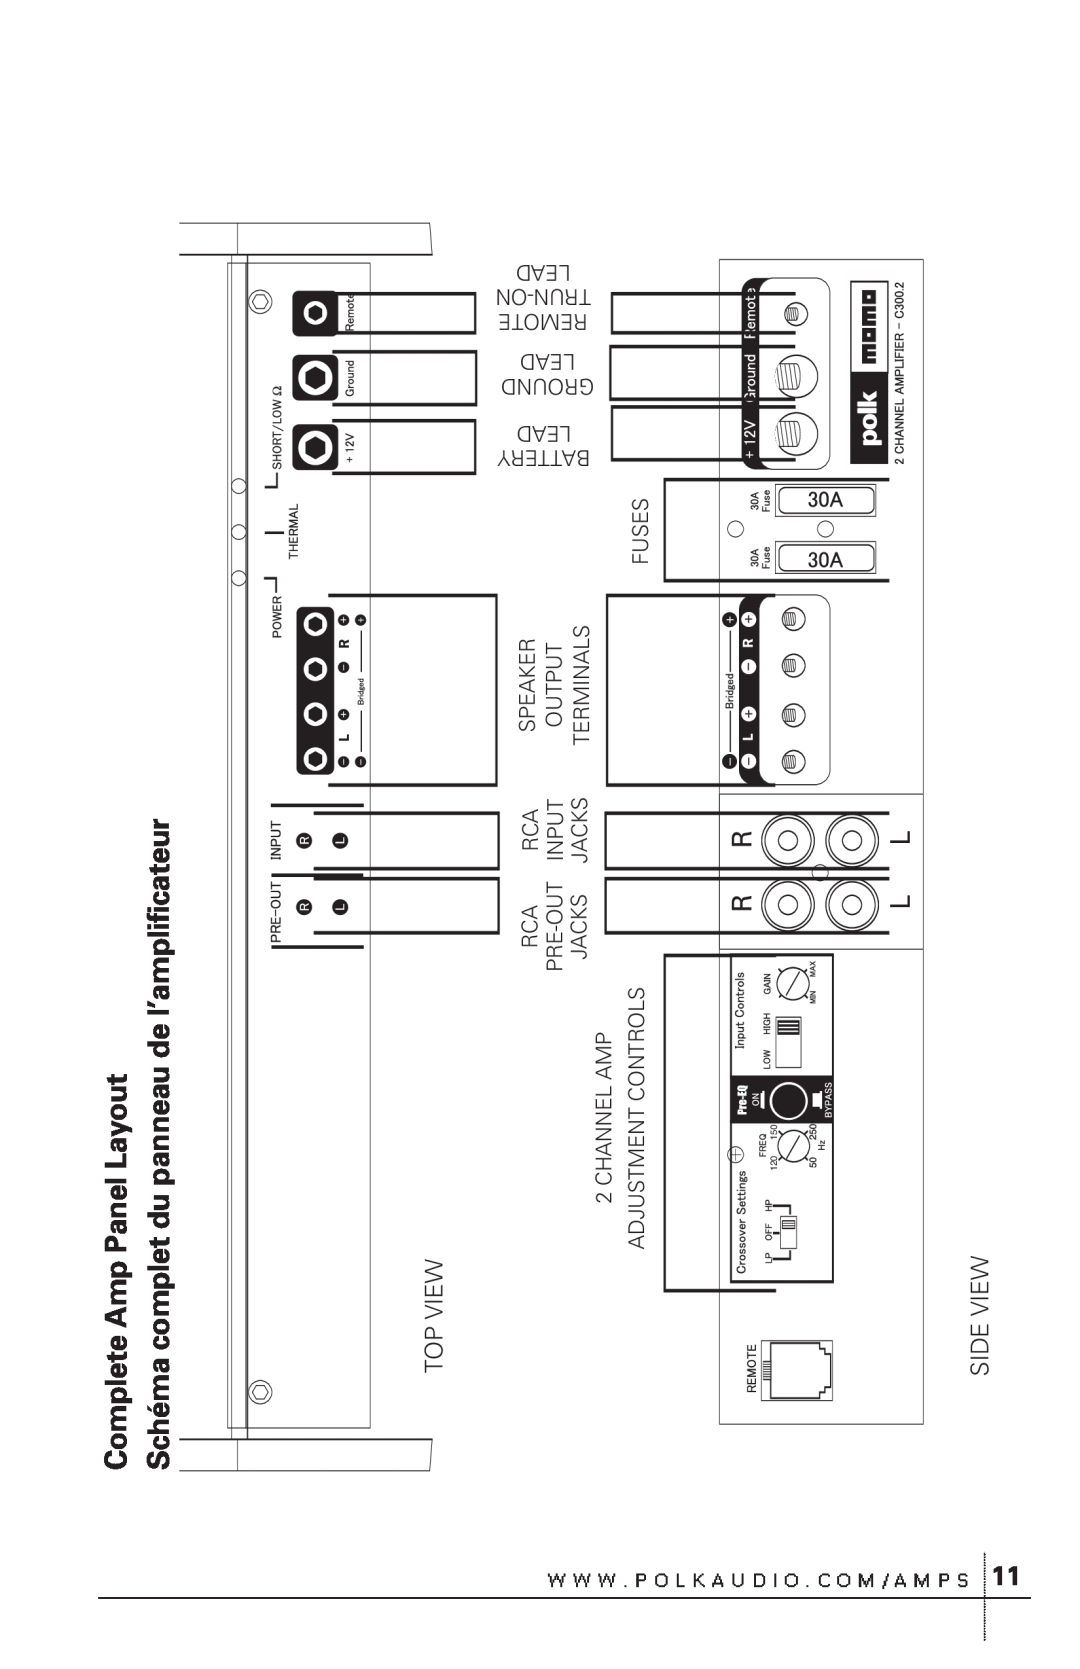 Polk Audio C300.2 owner manual Complete Amp Panel Layout, Schéma complet du panneau de l’amplificateur, Top View, Side View 